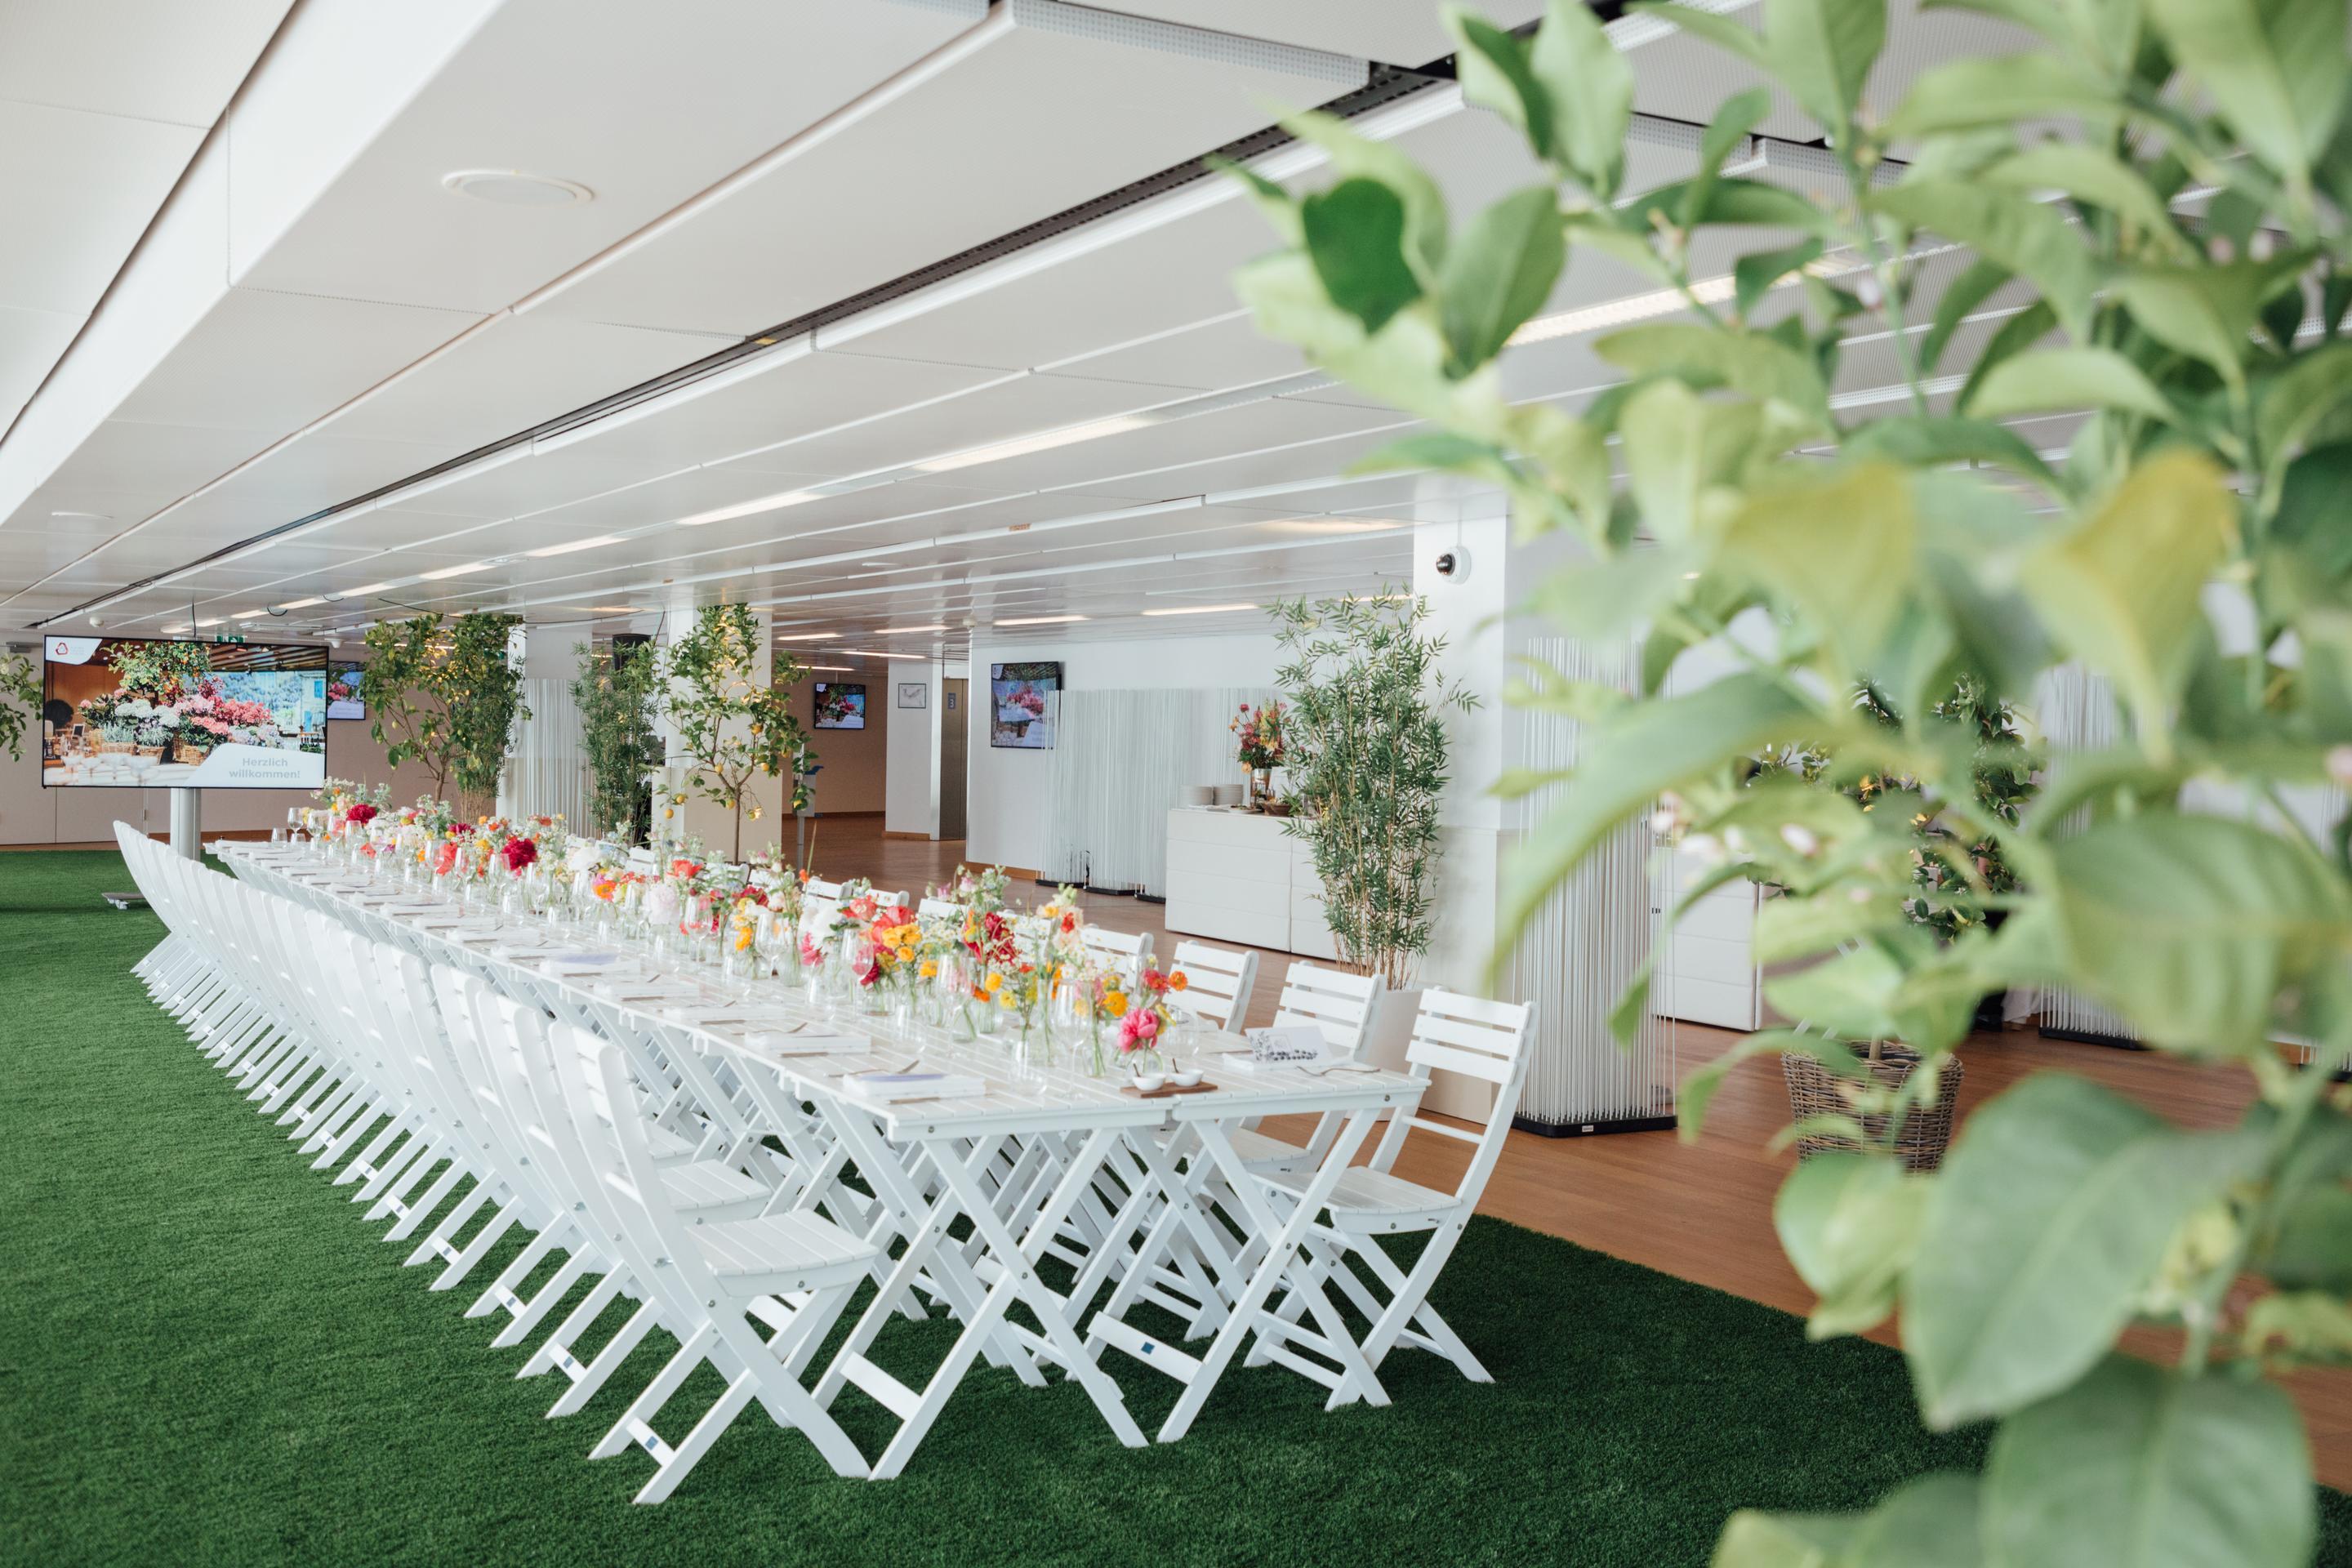 Foto: Weißer gedeckter Tisch in einem Raum mit grünem Teppich und Blumen